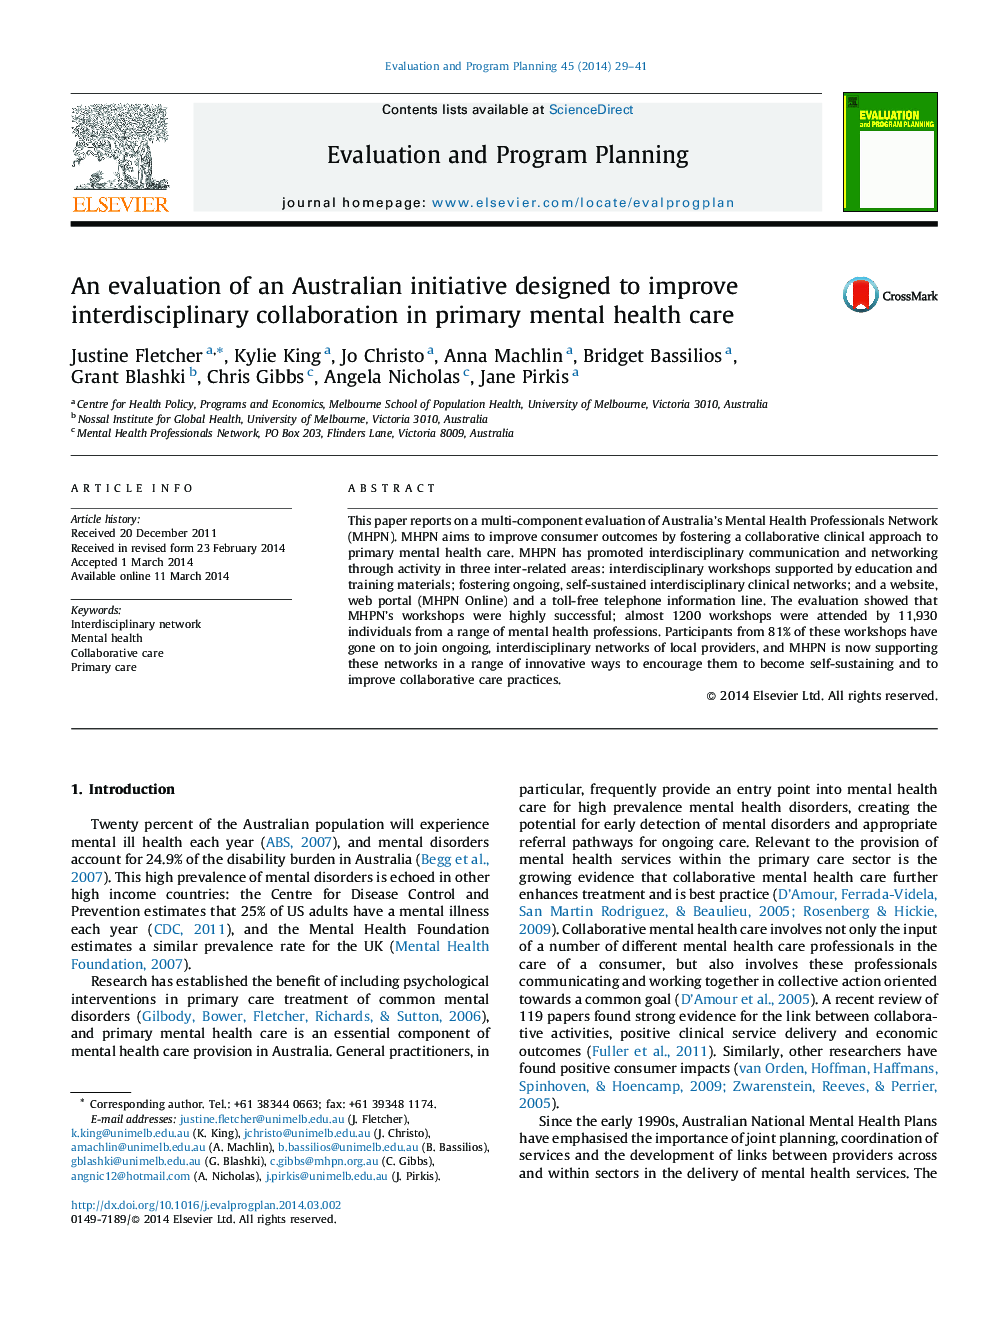 ارزیابی یک ابتکار استرالیا برای بهبود همکاری بین رشته ای در مراقبت های بهداشتی اولیه 